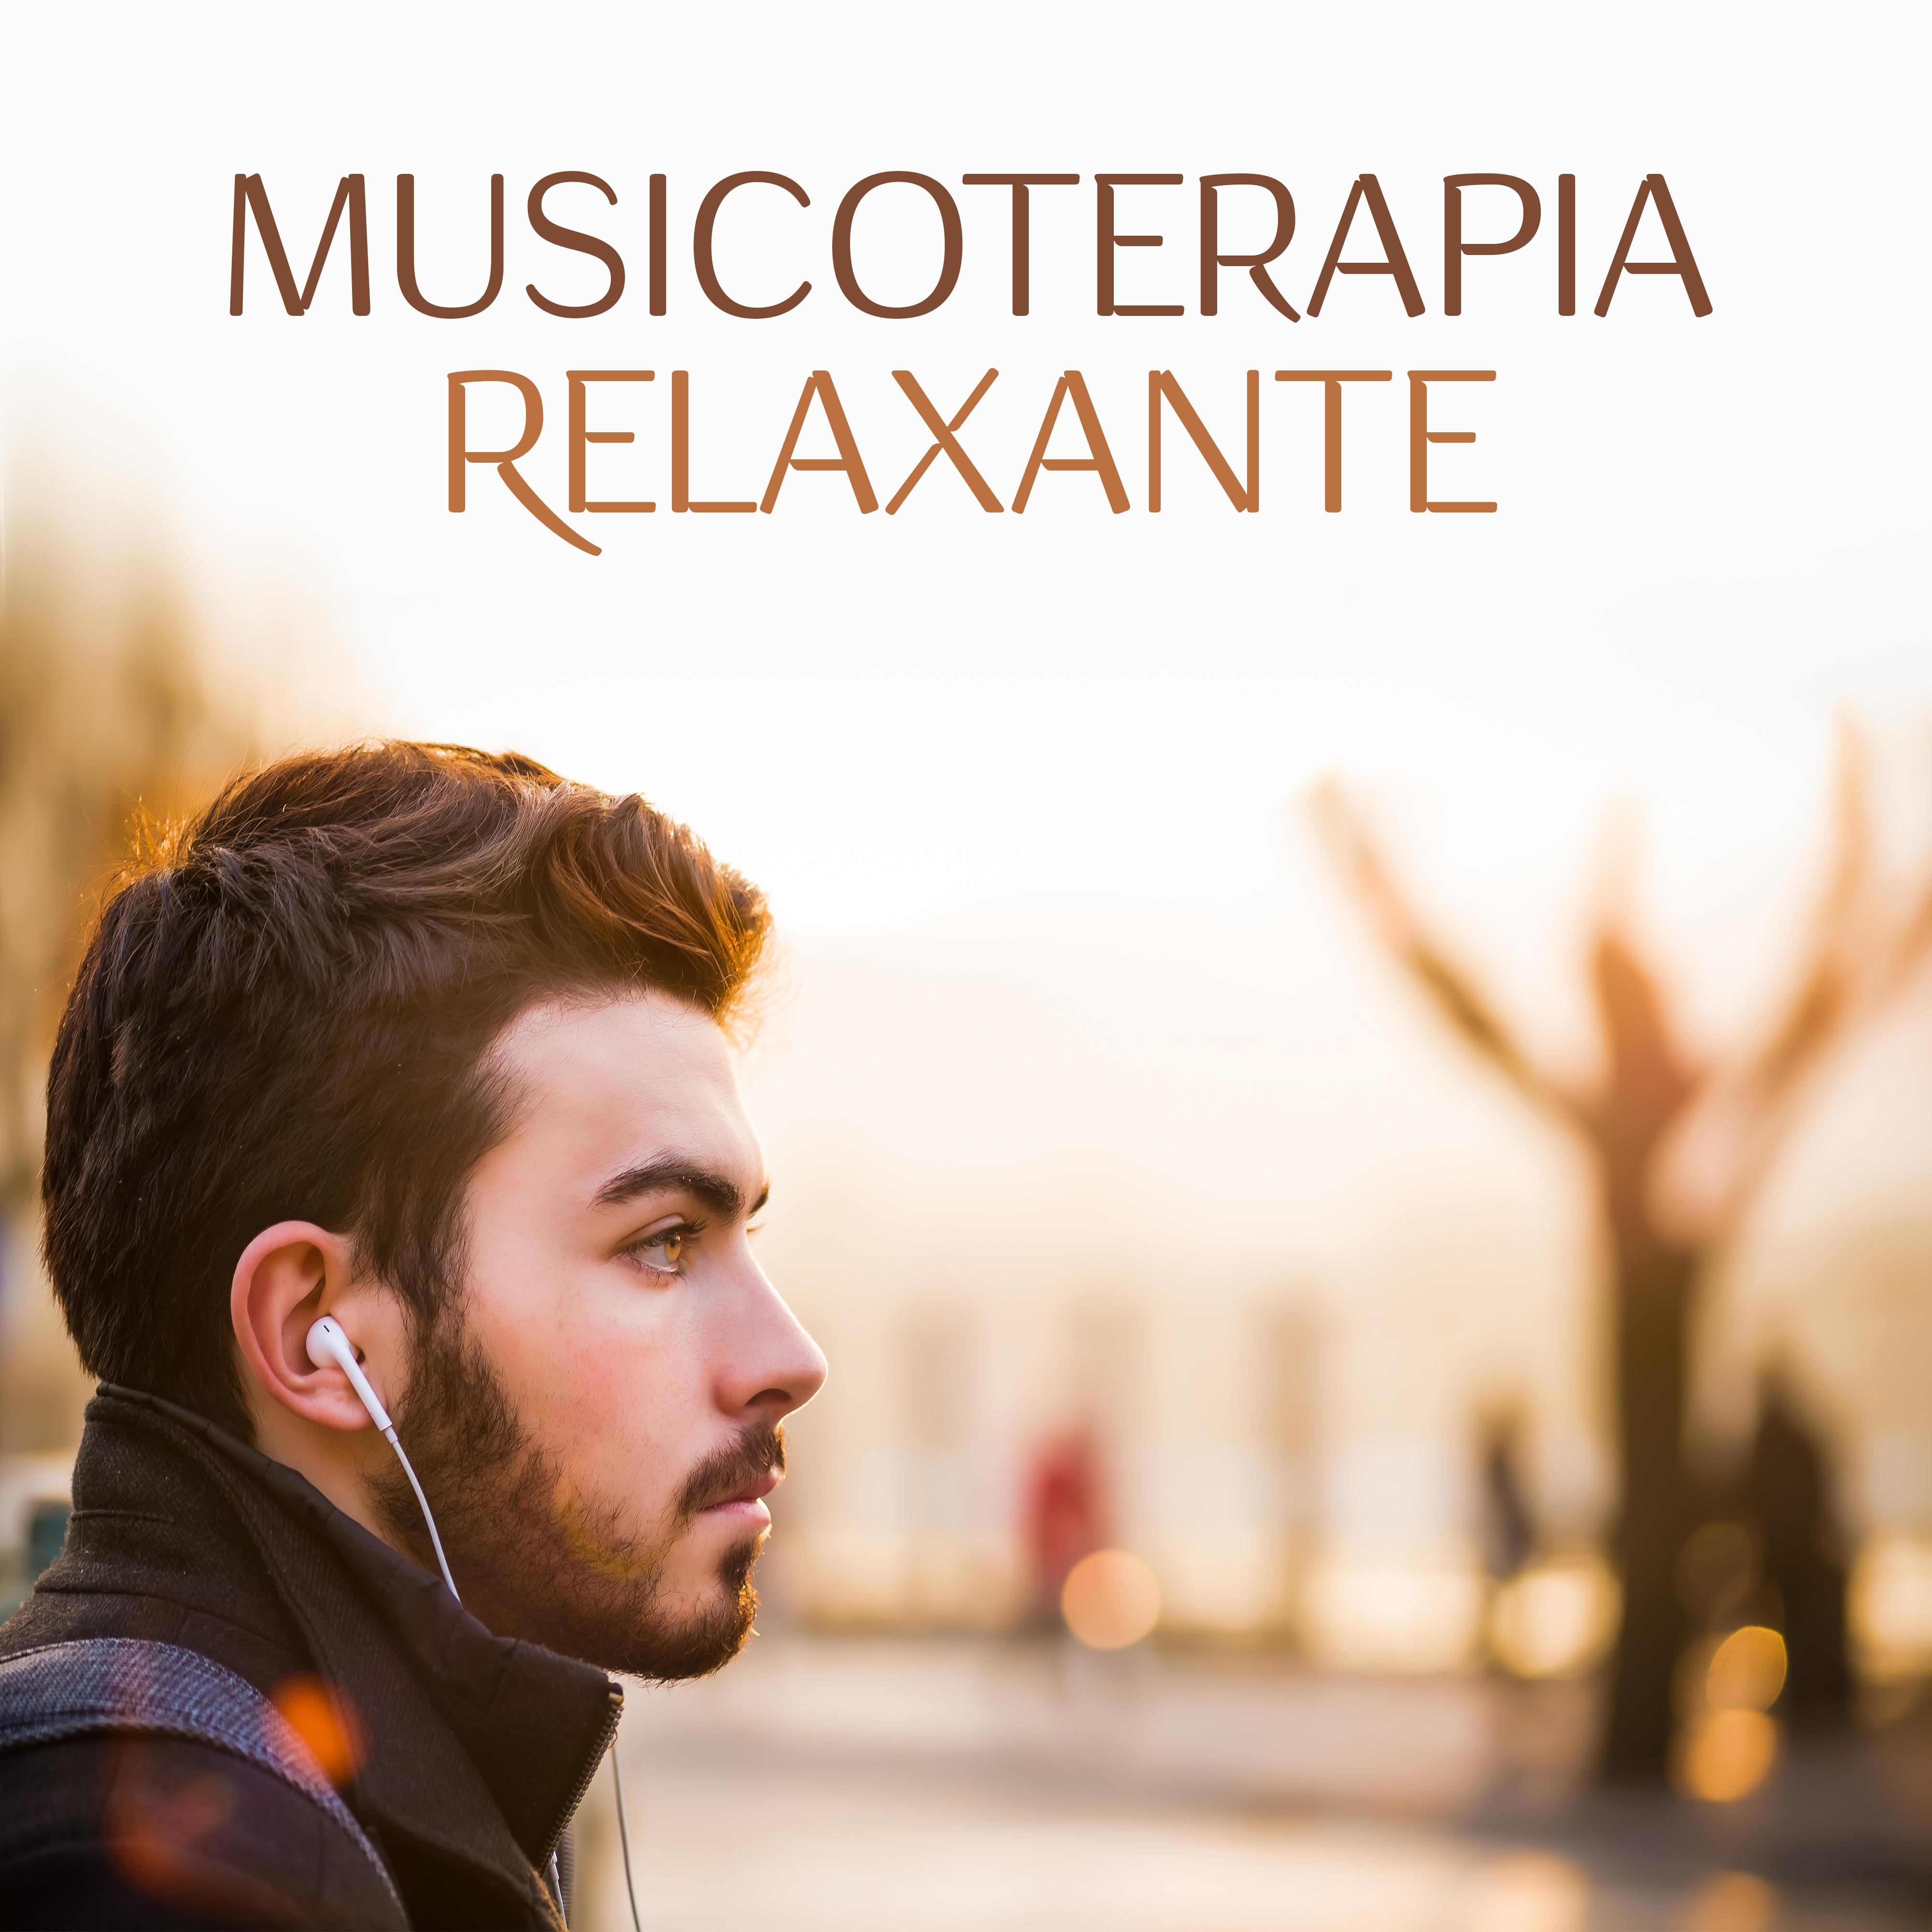 Musicoterapia Relaxante